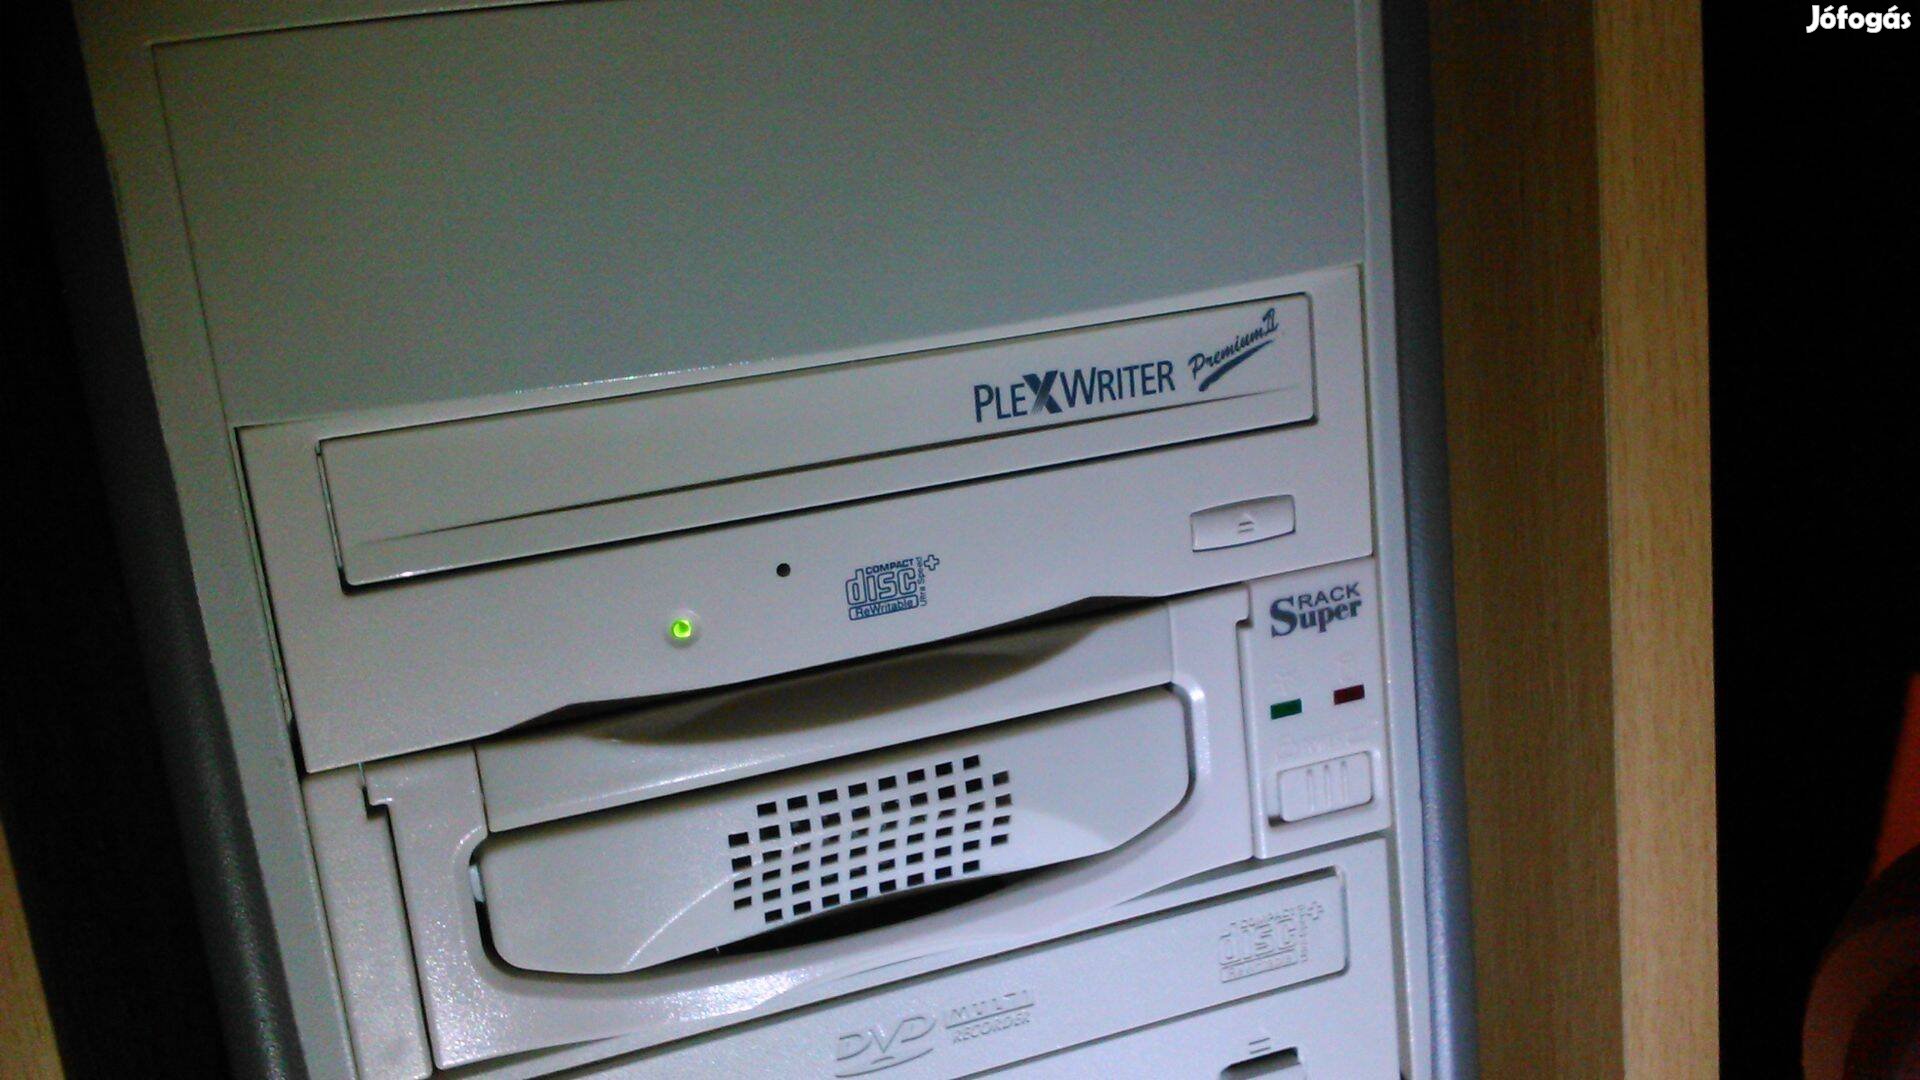 Plextor Plexwriter Premium 2 Profi CD Író!